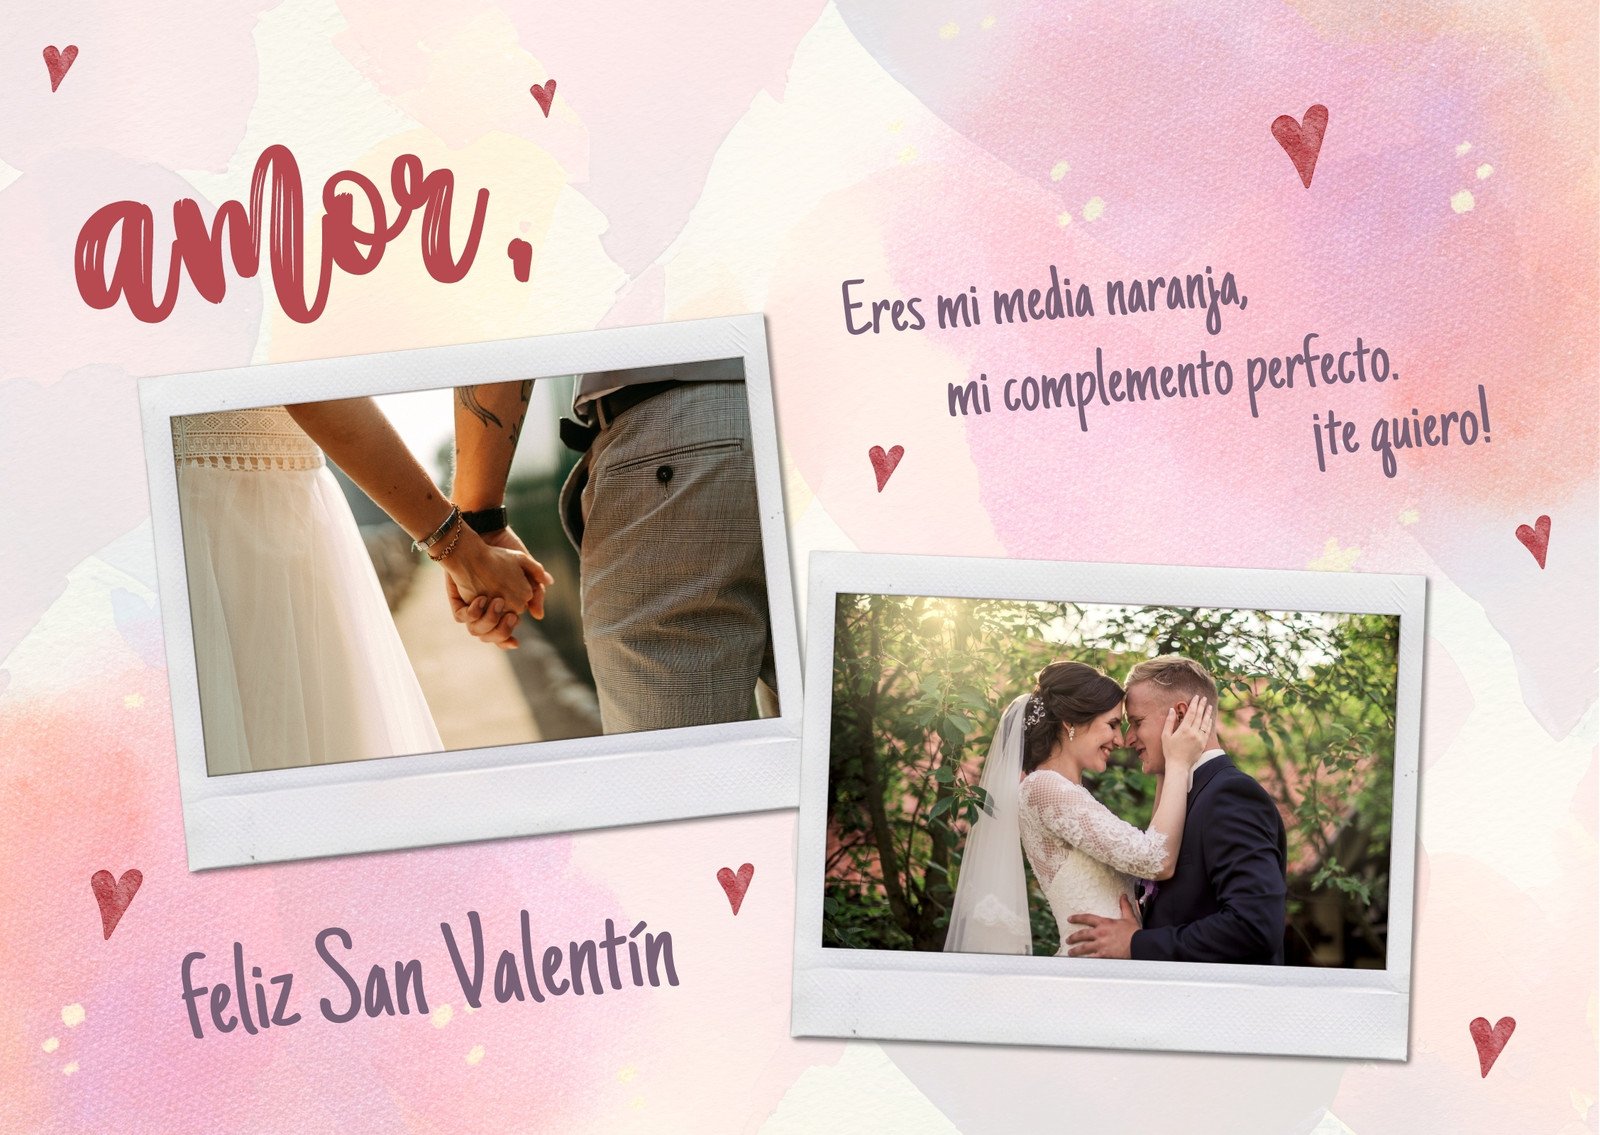 Tarjeta Romántica de Día de San Valentín con fotos de pareja